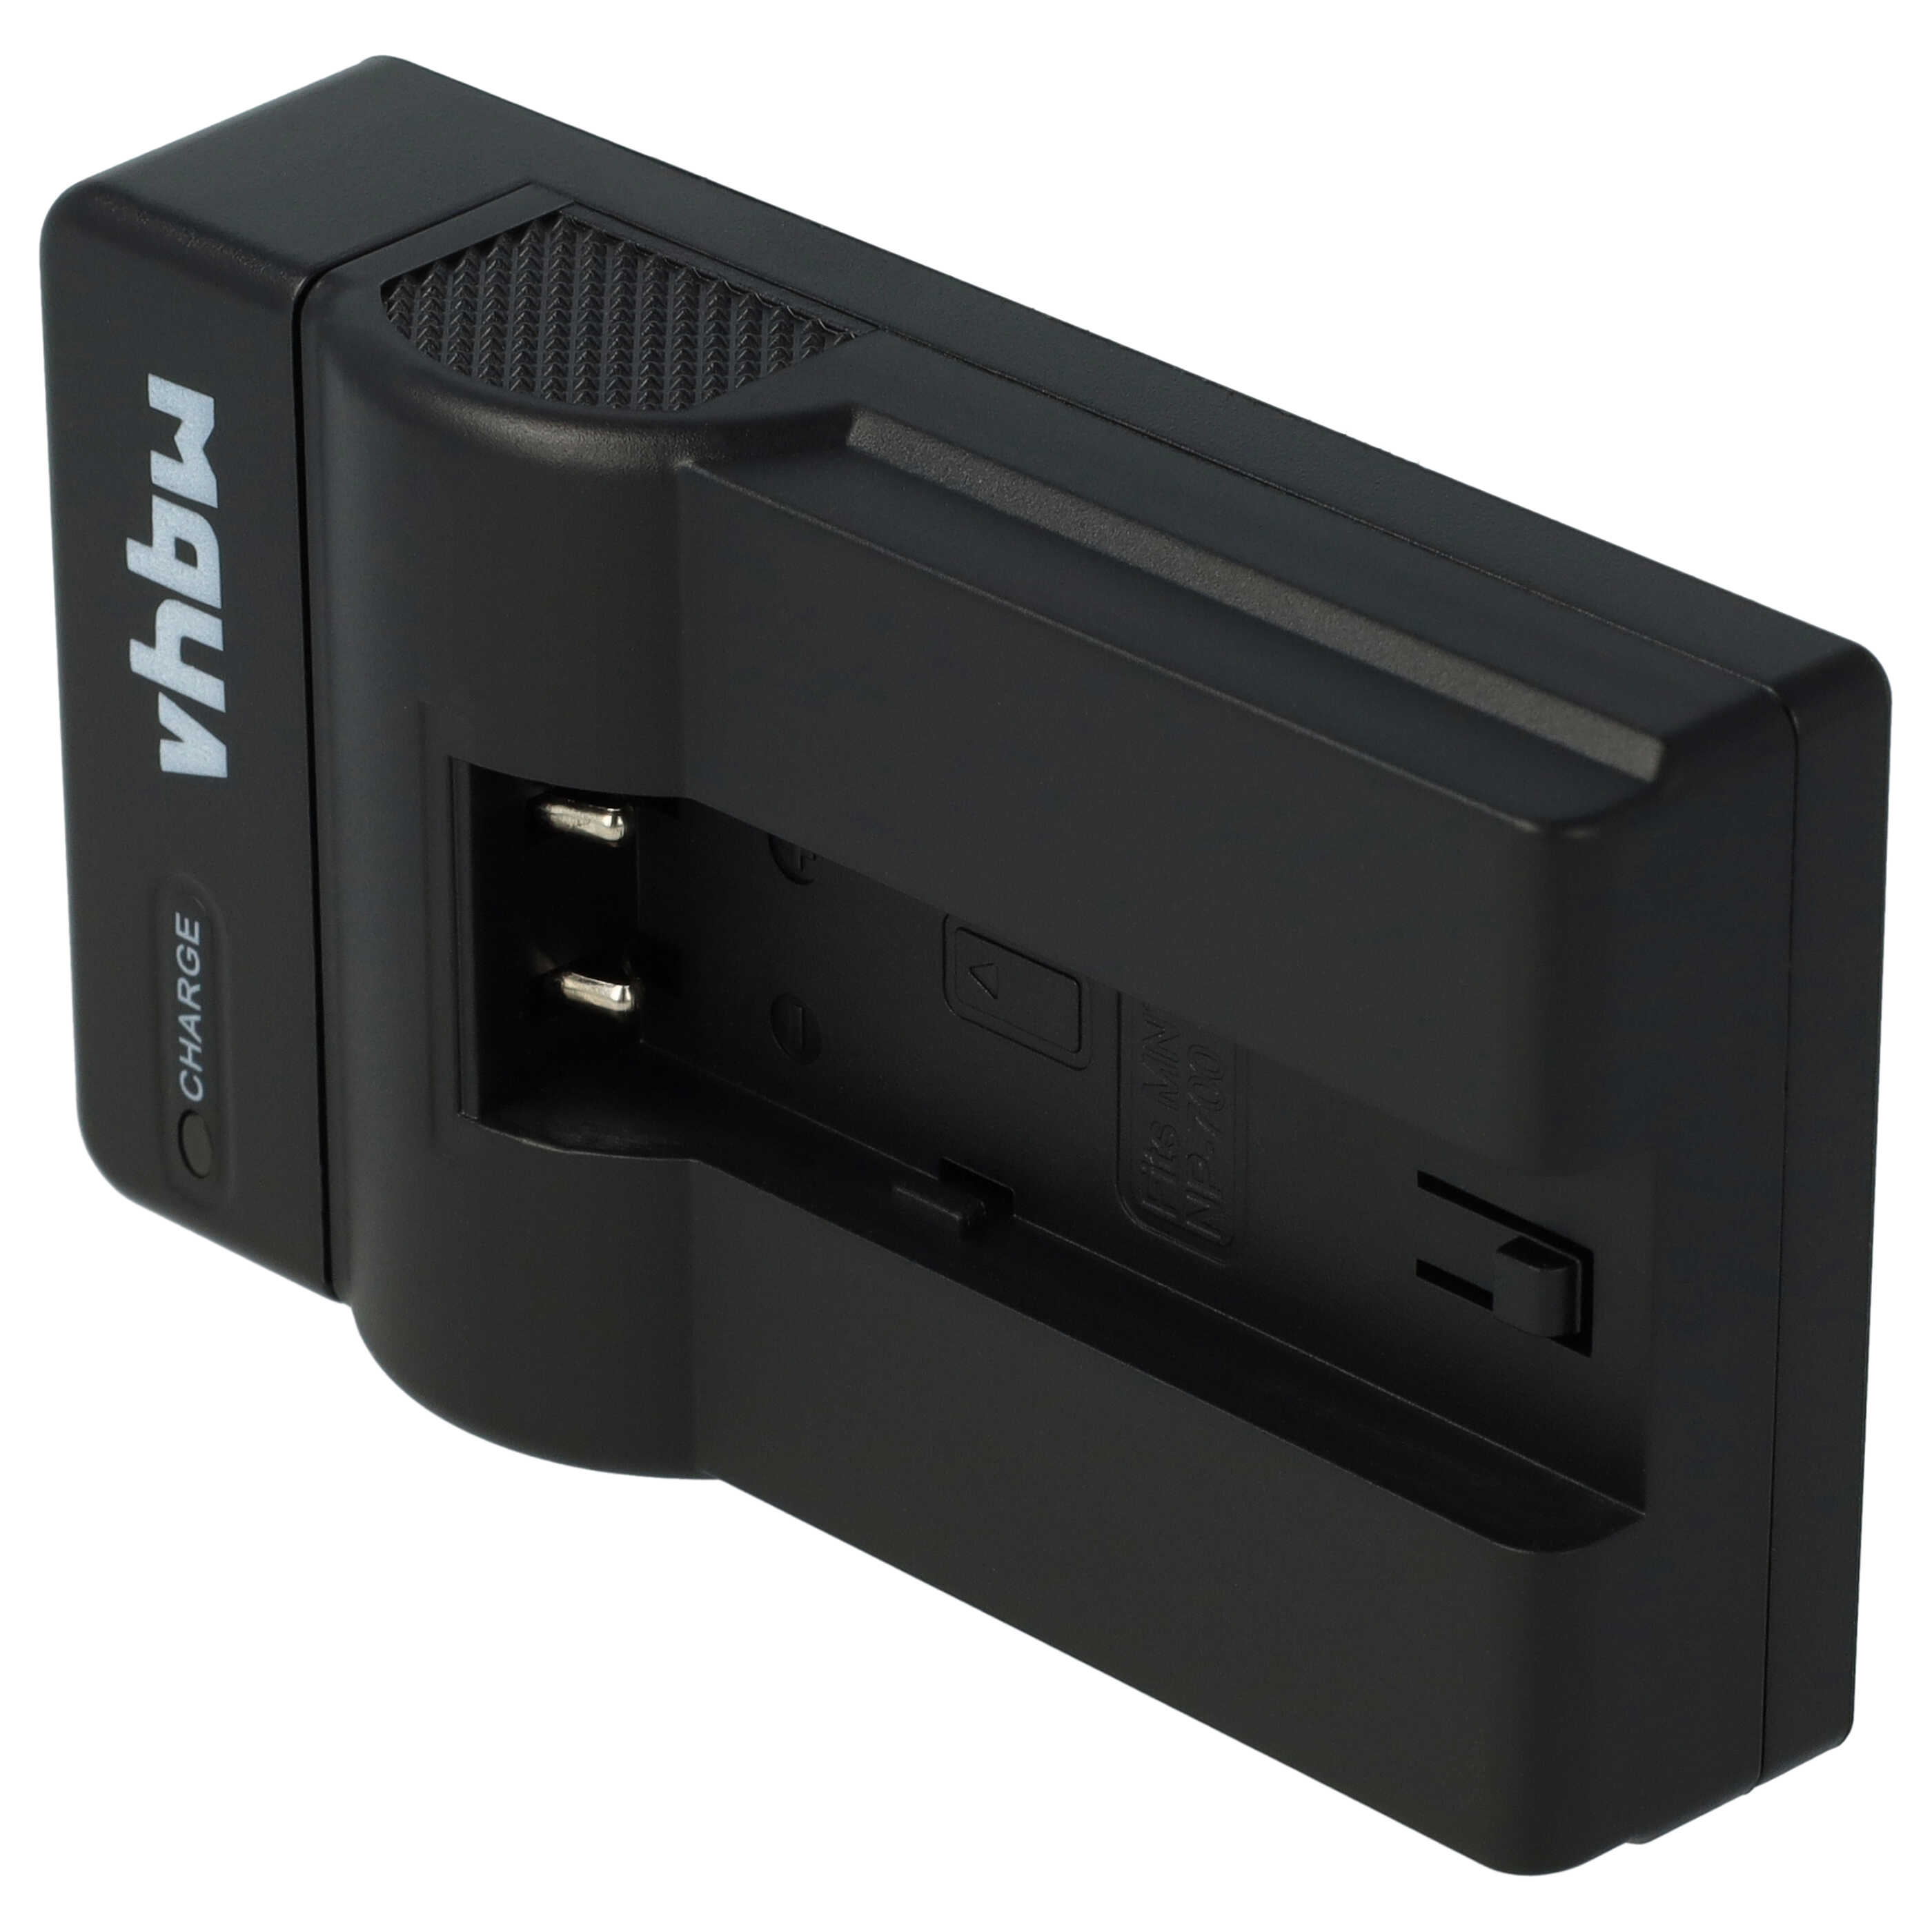 Akku Ladegerät passend für Pentax Digitalkamera und weitere - 0,5 A, 8,4 V